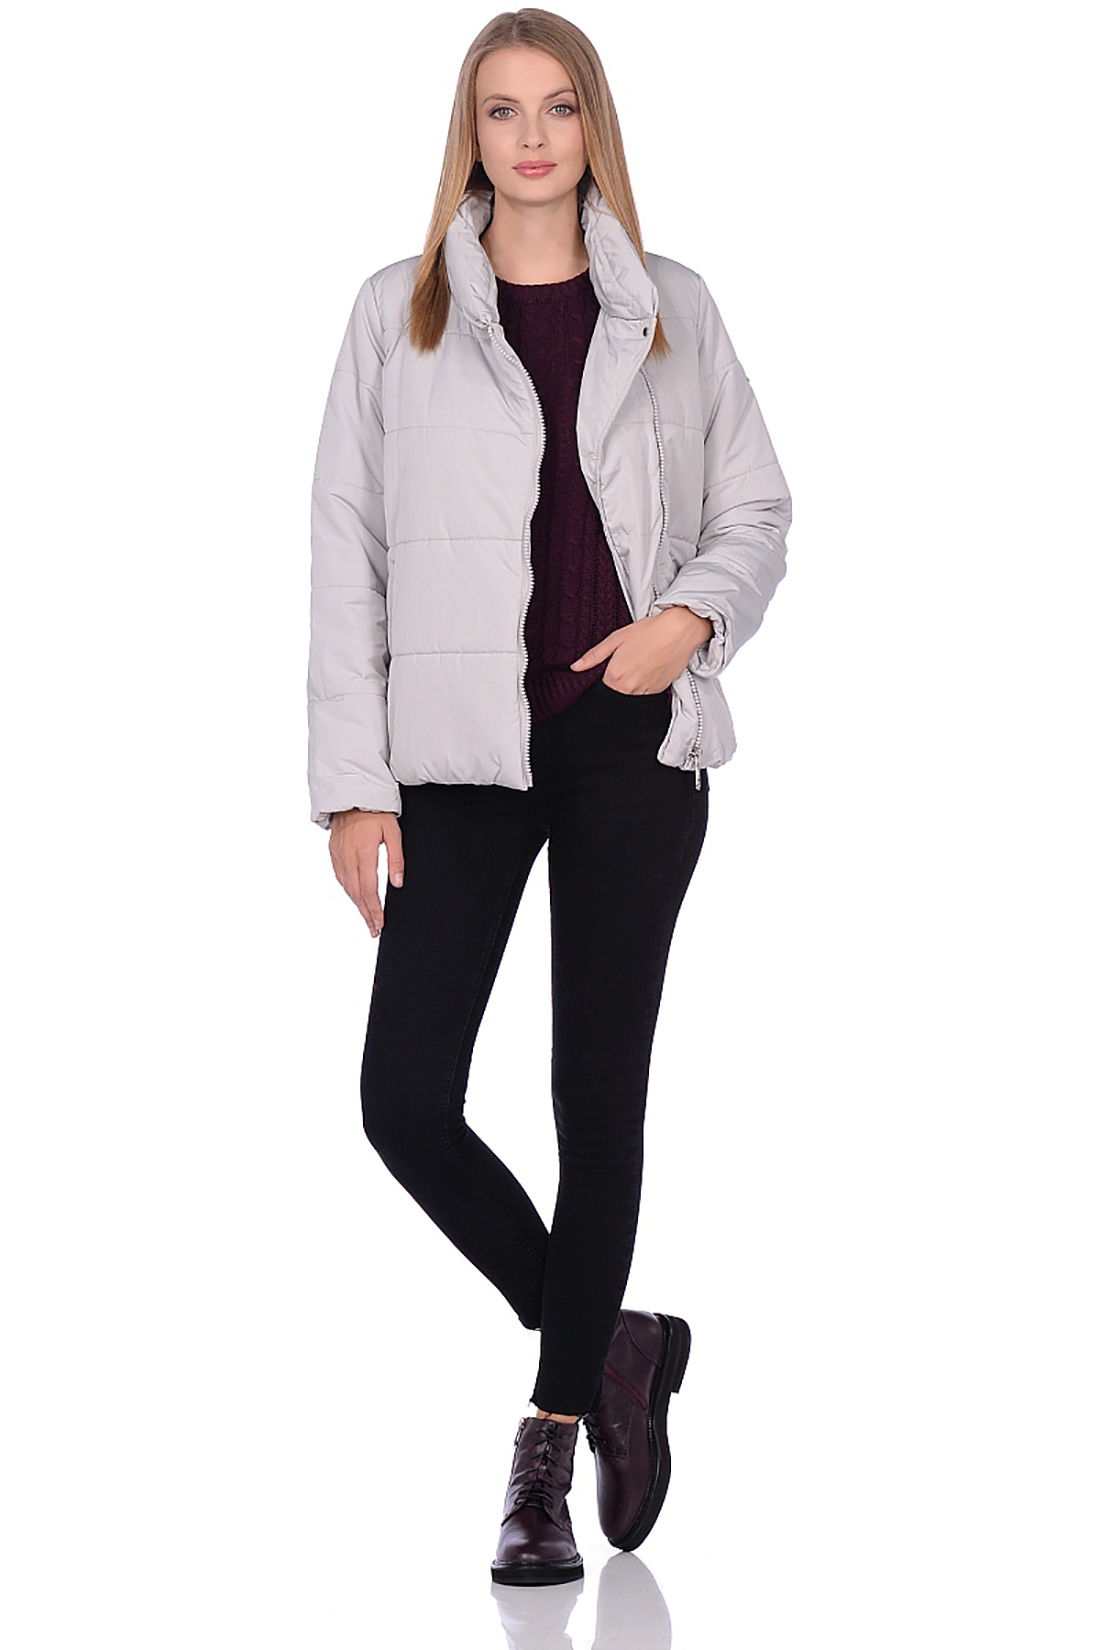 Короткая куртка с асимметричной застёжкой (арт. baon B039506), размер S, цвет серый Короткая куртка с асимметричной застёжкой (арт. baon B039506) - фото 3